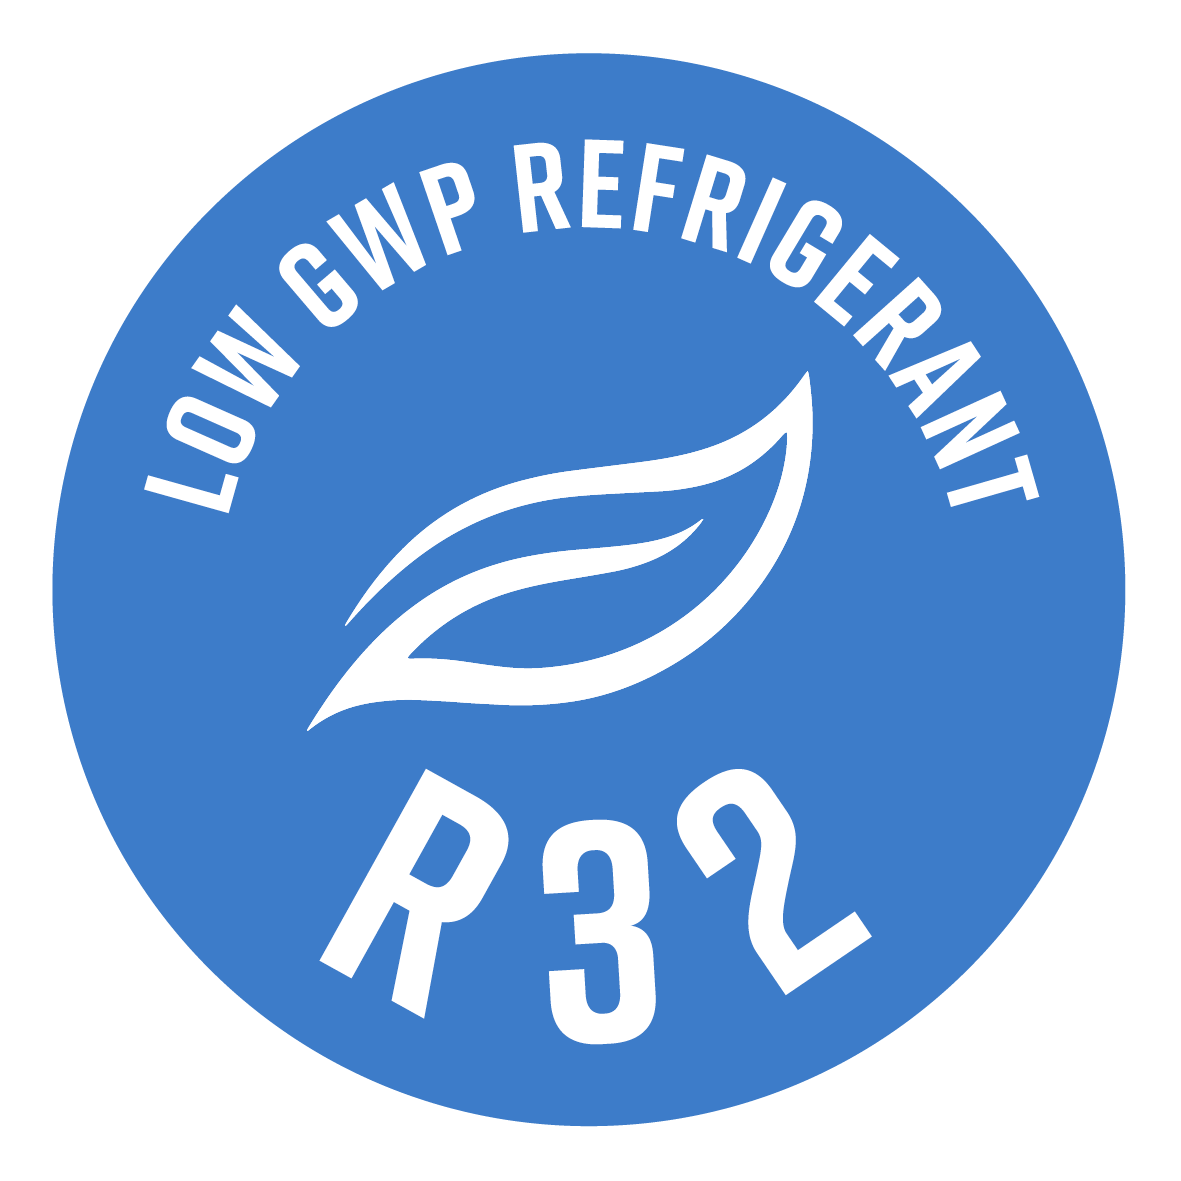 Utilizza il refrigerante R32, caratterizzato da un effetto serra ridotto di quasi il 70% (rispetto all'R410A)